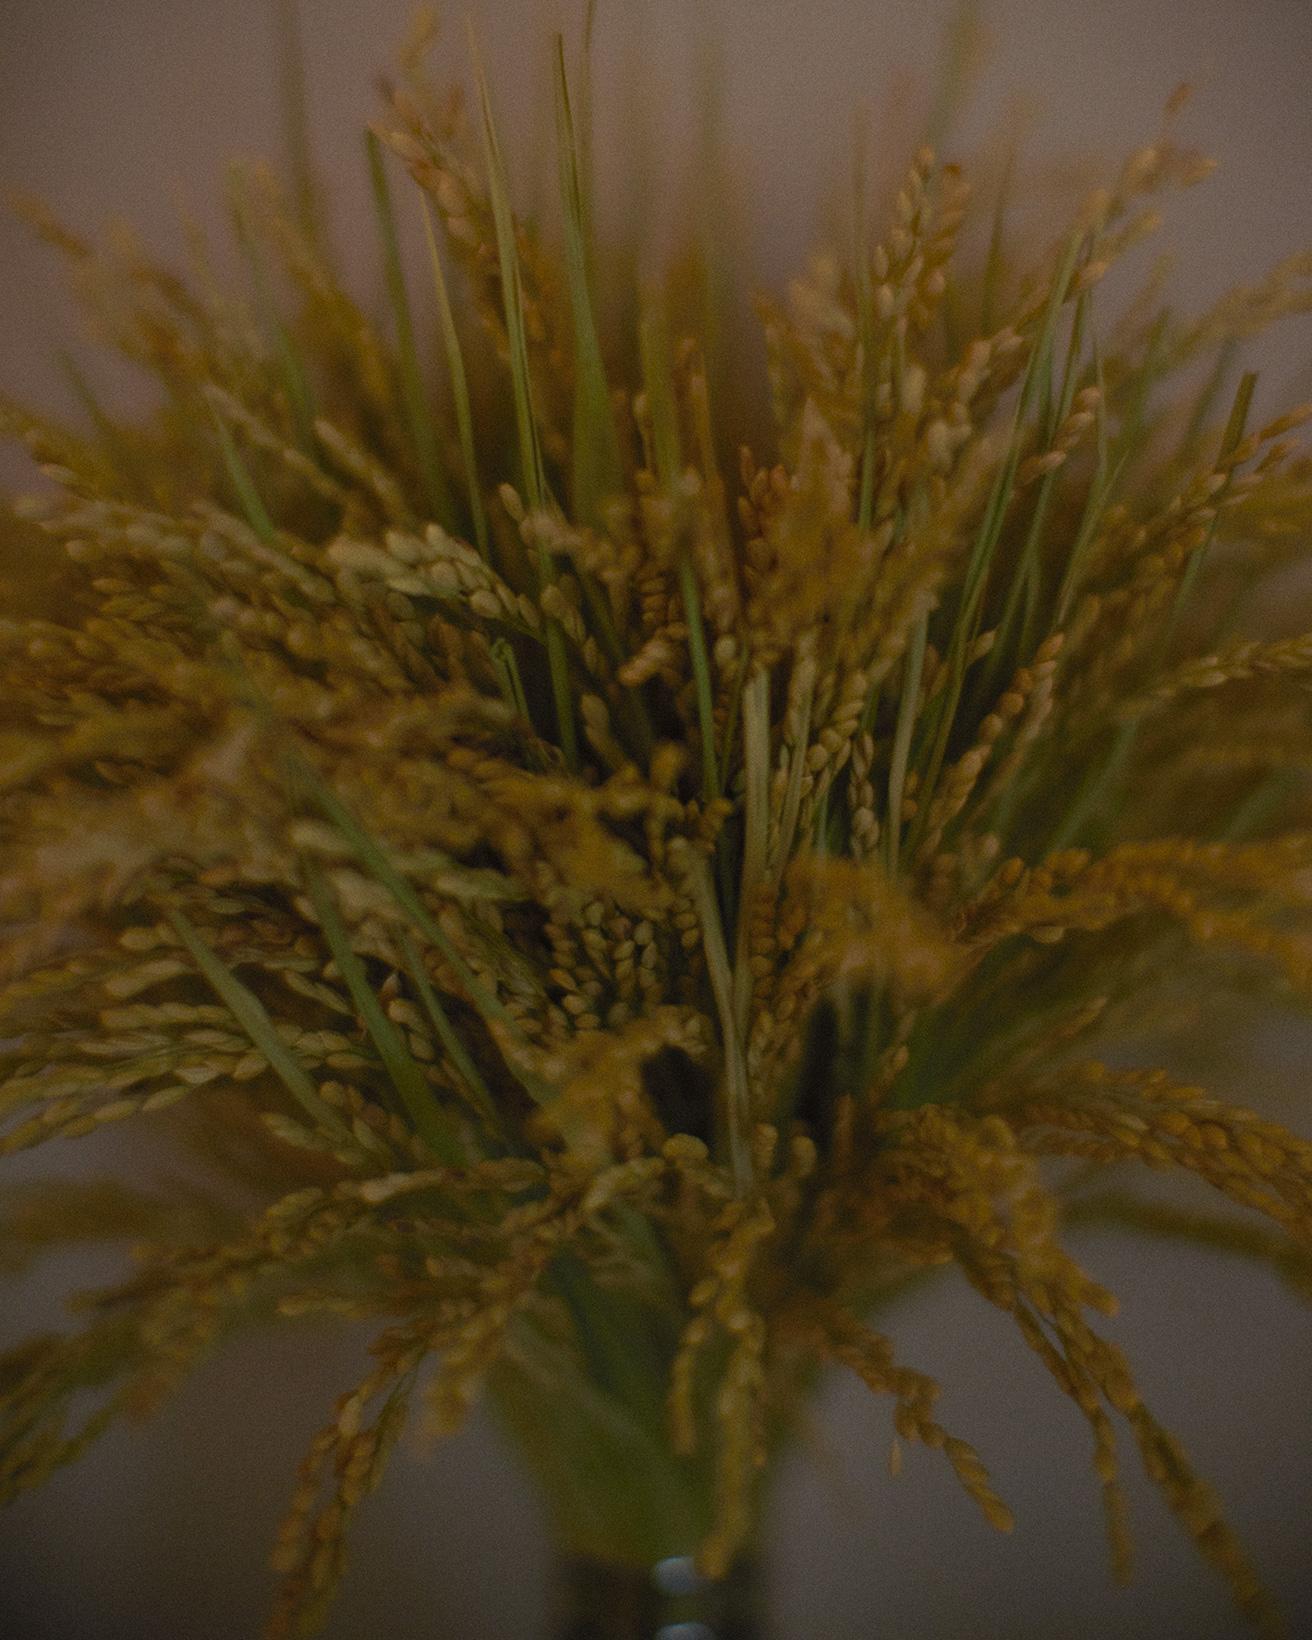 細く、伸びかな穂先に実をつける稲穂は、五穀豊穣の願いを込めて正月のしめ飾りに使われてきた。結びや飾りを加えずに、1種類だけで見せることで、植物そのものの力がダイレクトに感じられる飾り物になった。